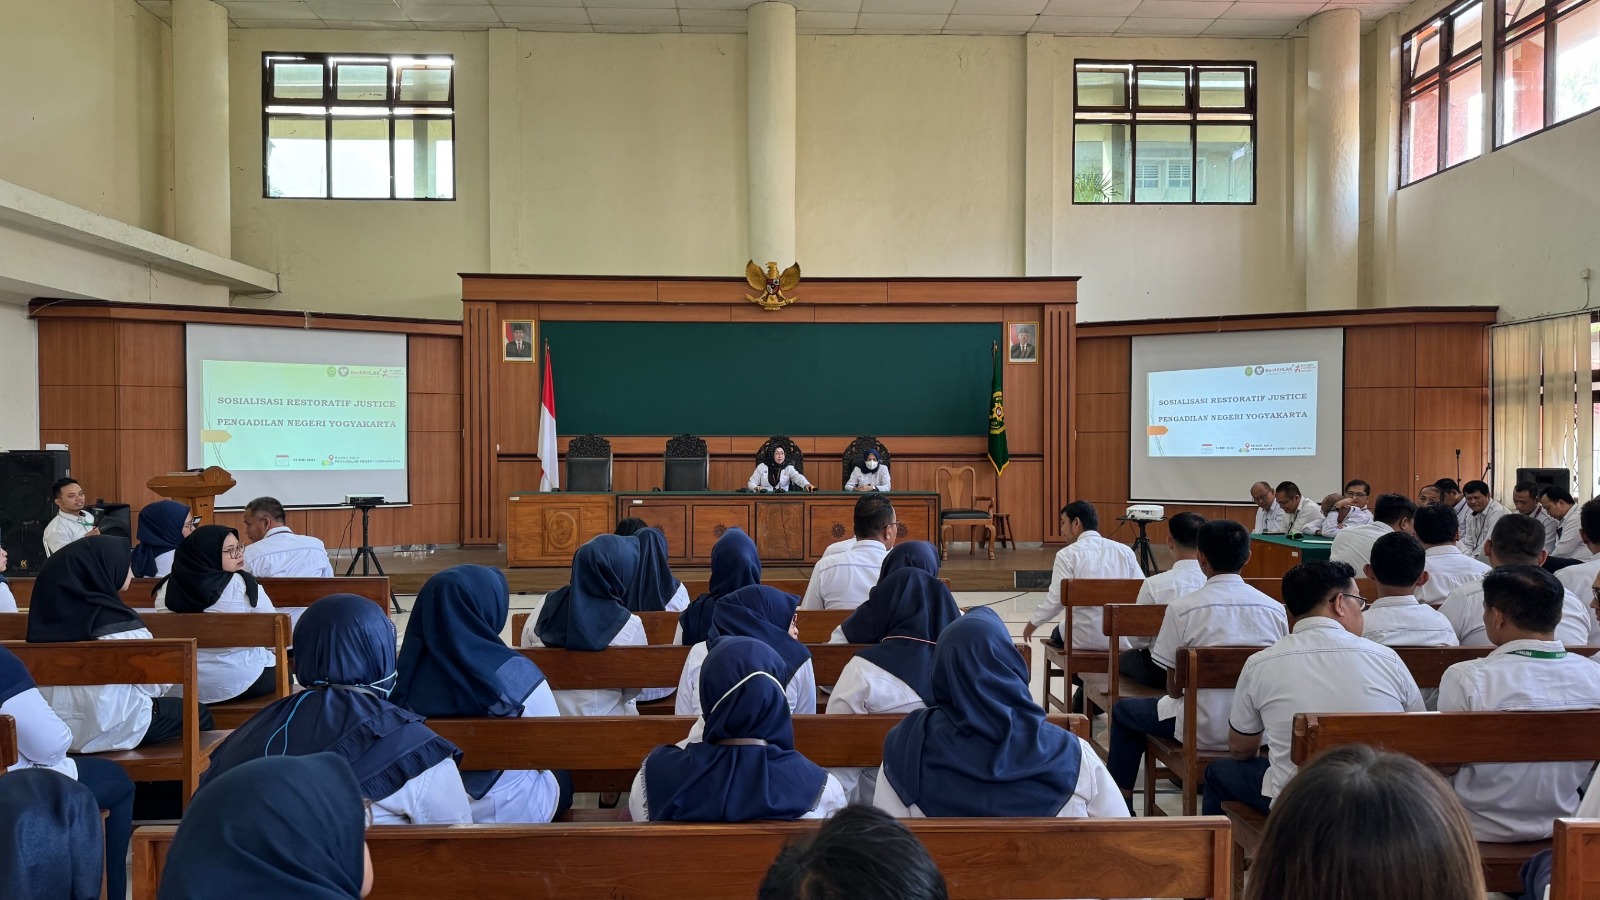 Pengadilan Negeri Yogyakarta Melaksanakan Sosialisasi Restorative Justice